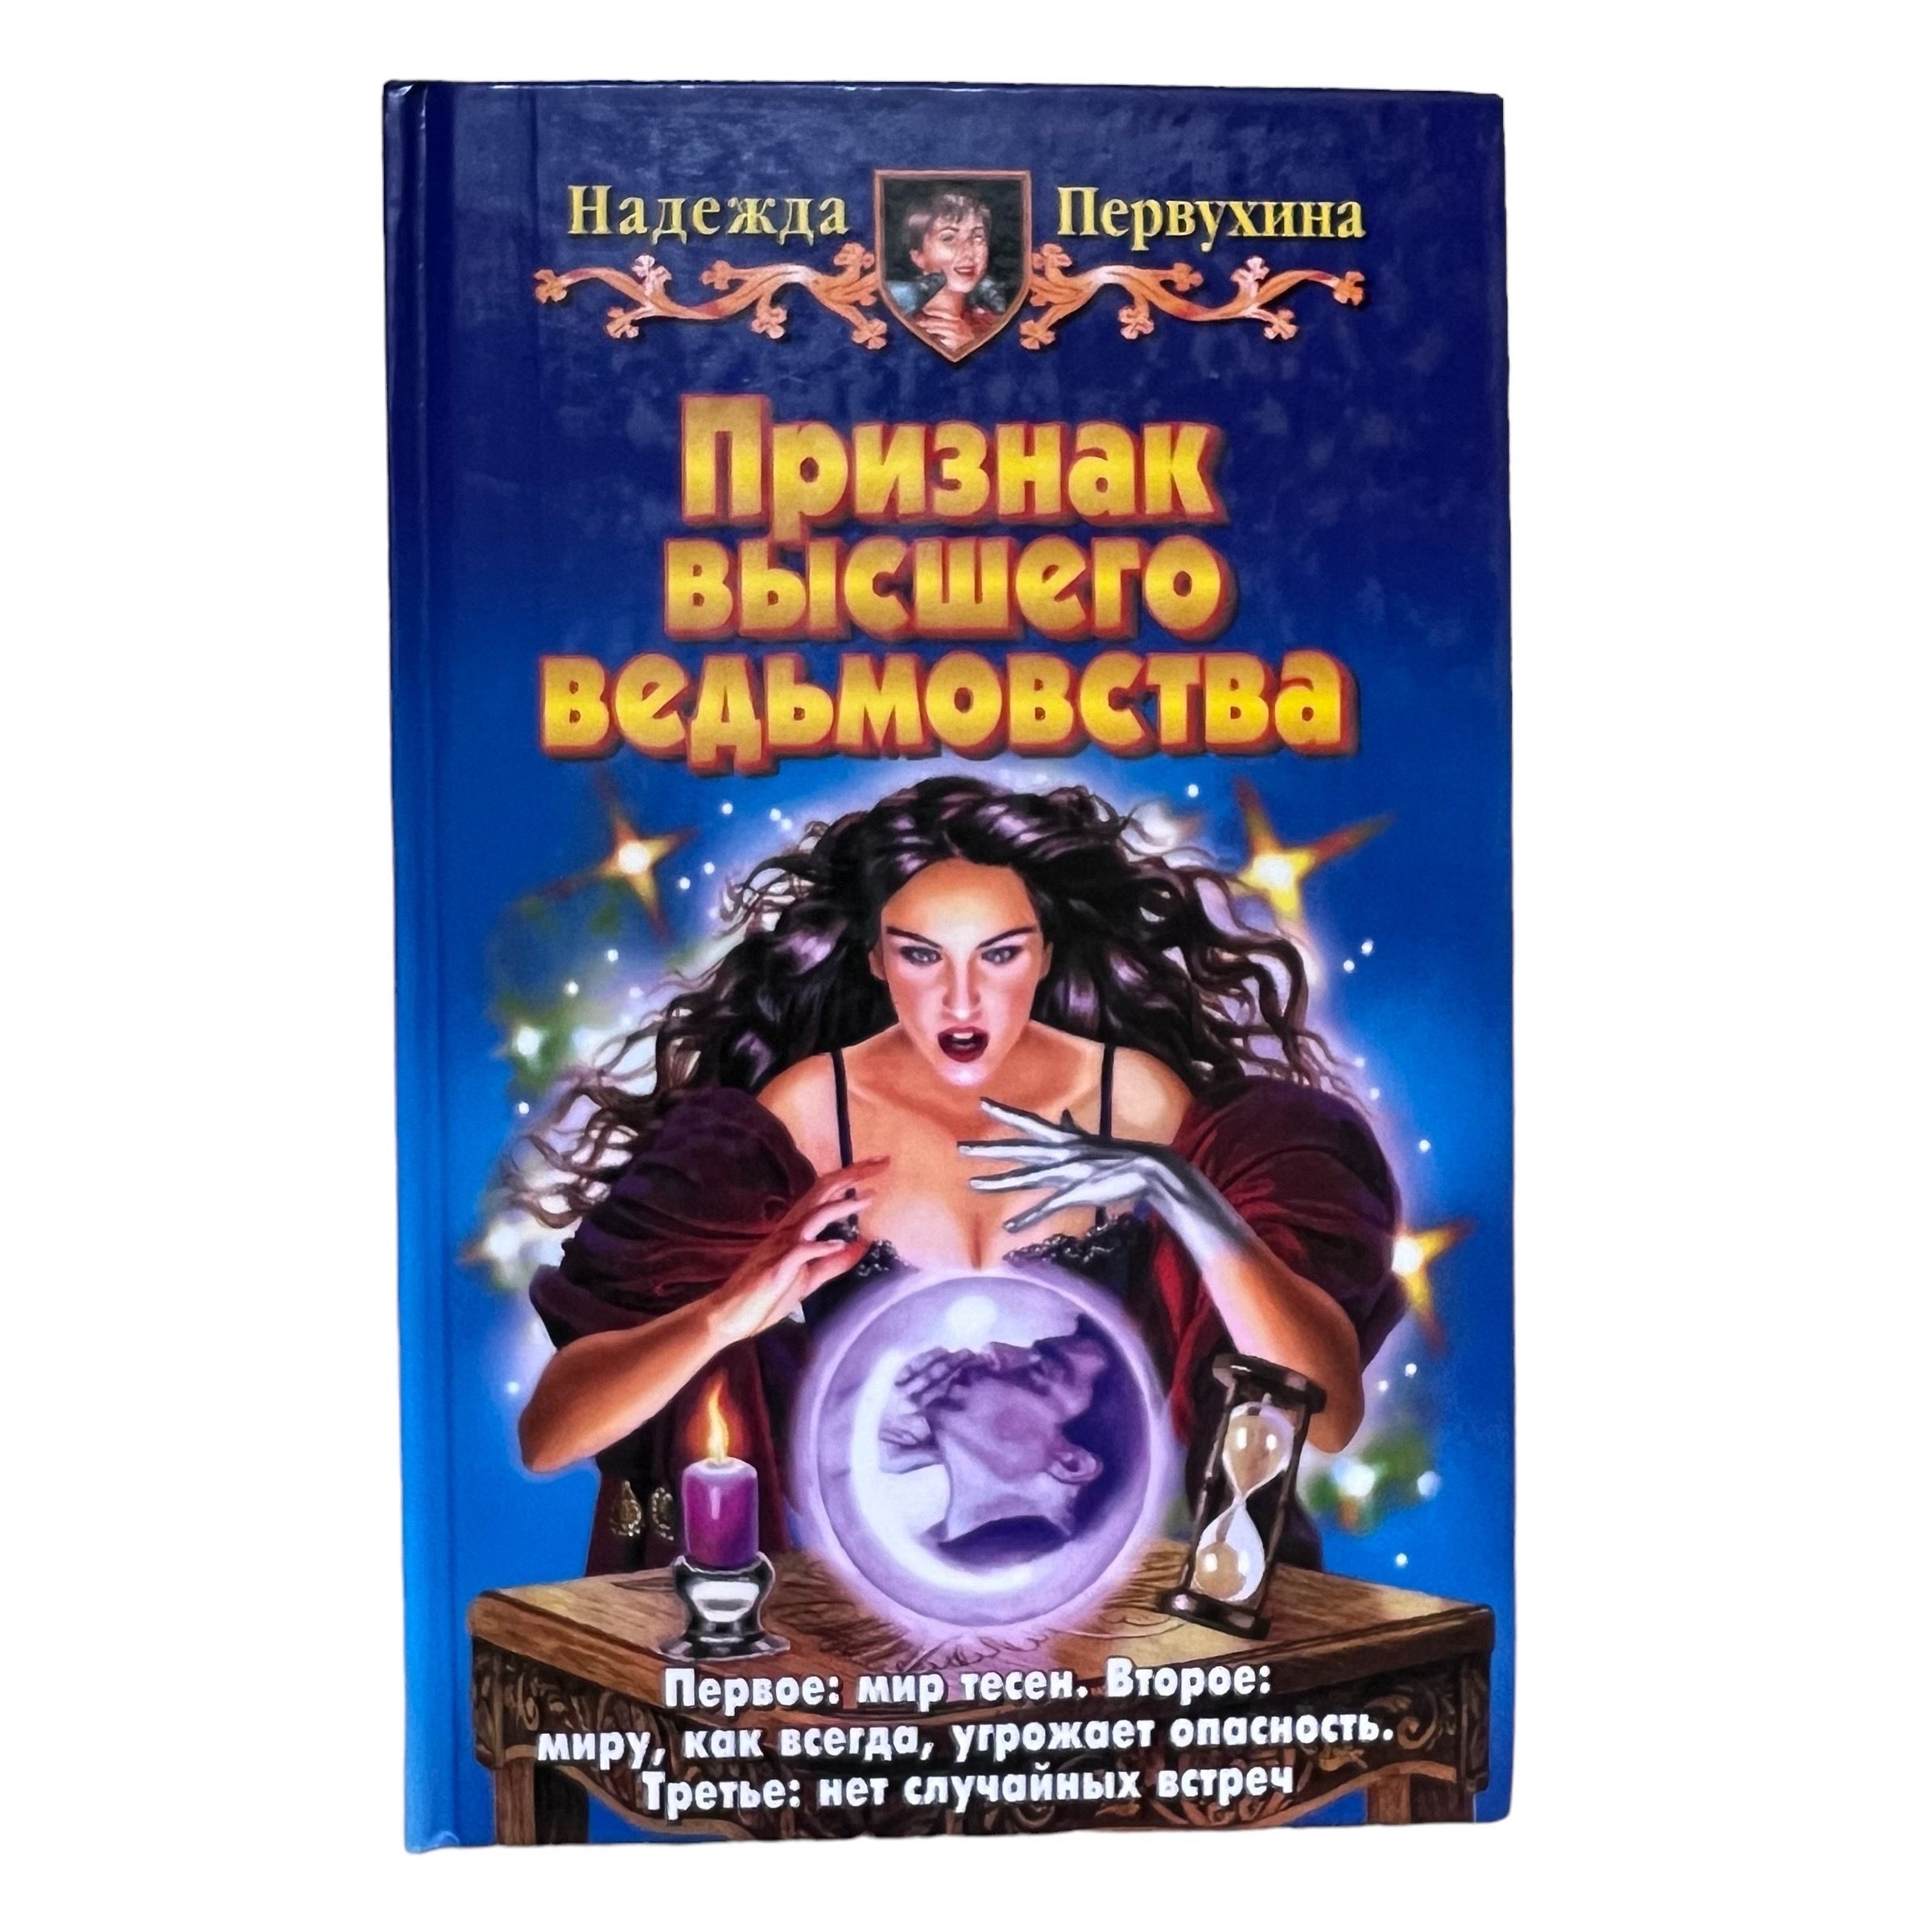 Аудиокнига ученик книга 8. Купить в Новосибирске книгу Петербург для детей Первухина.